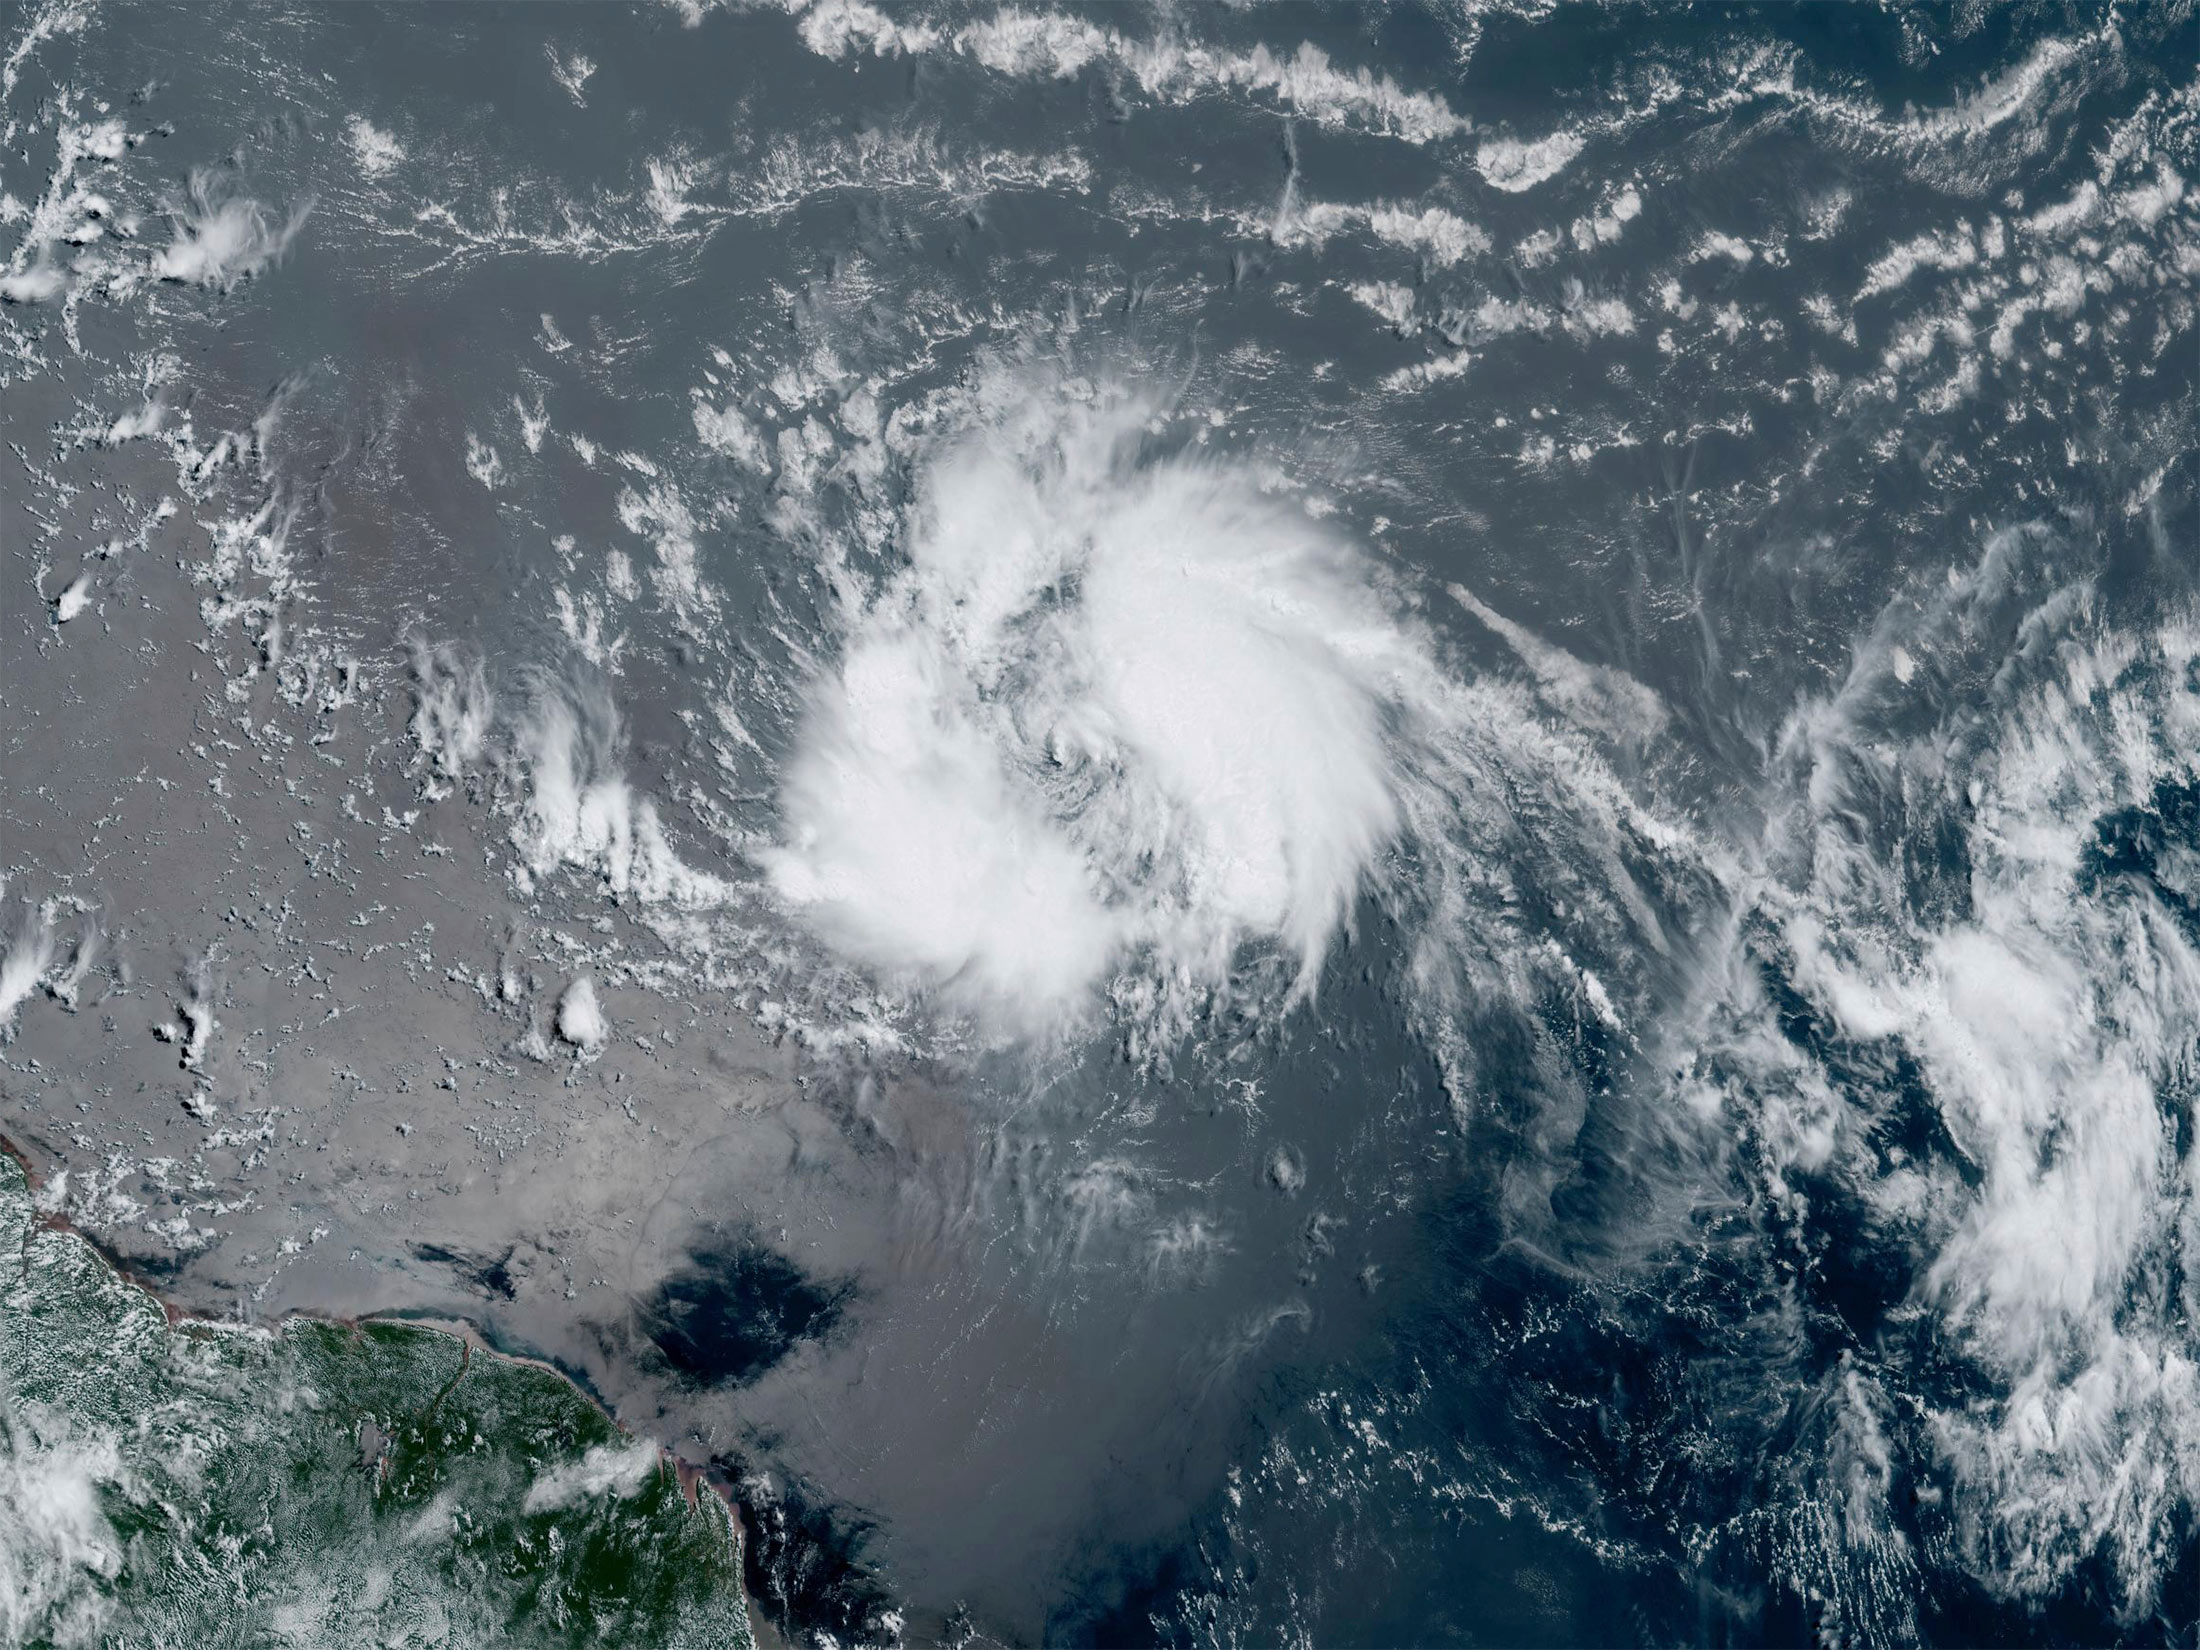 Через 2 шторм. Шторм. Атлантический океан сейчас. Буря. Тропические циклоны в Атлантике 1989-1992.